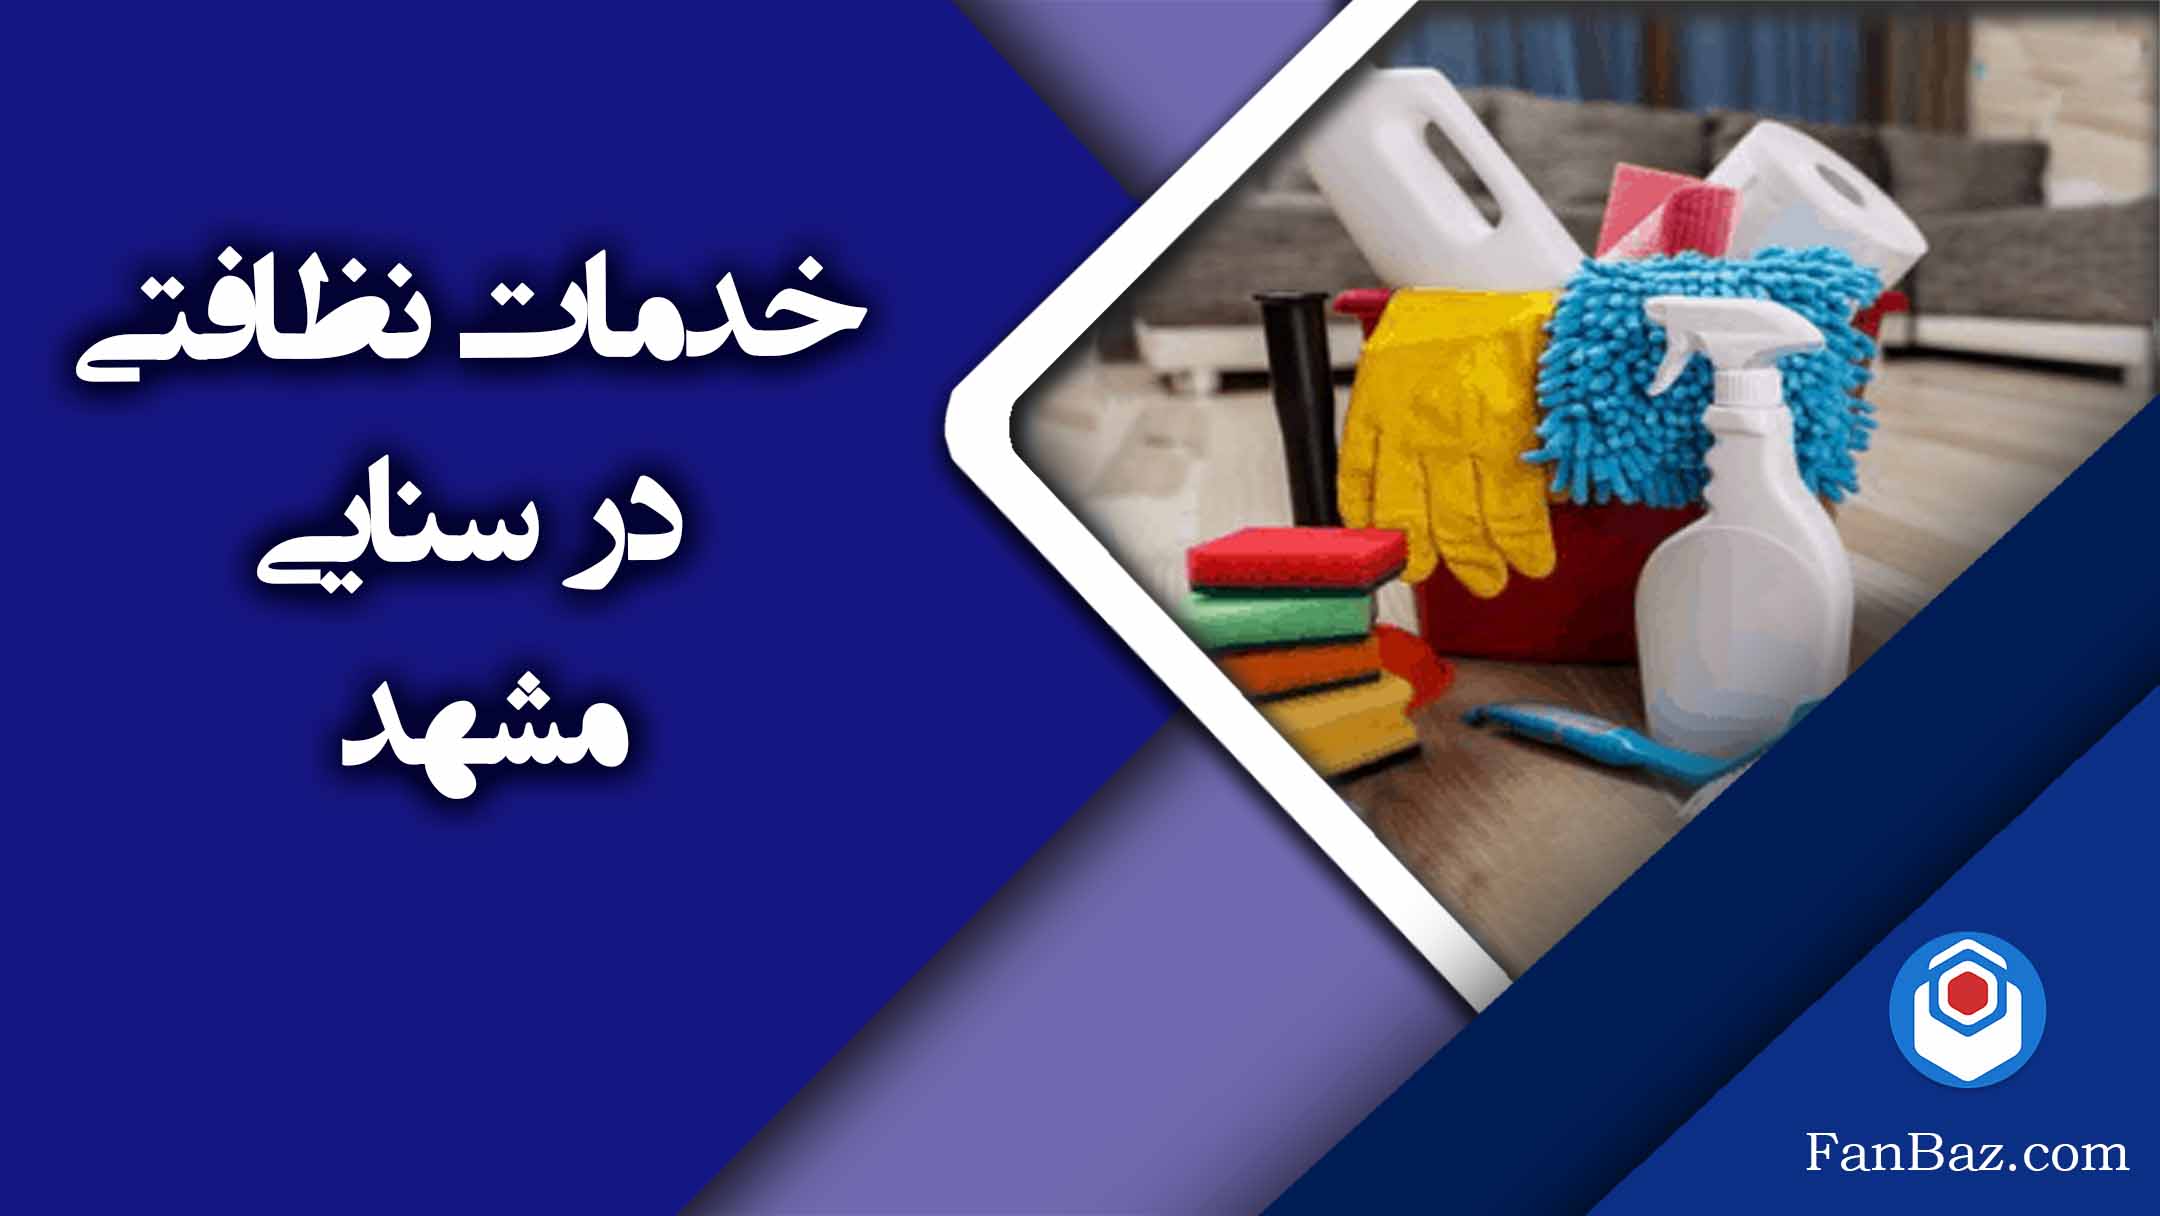 شرکت خدمات نظافتی فن باز در سنایی مشهد